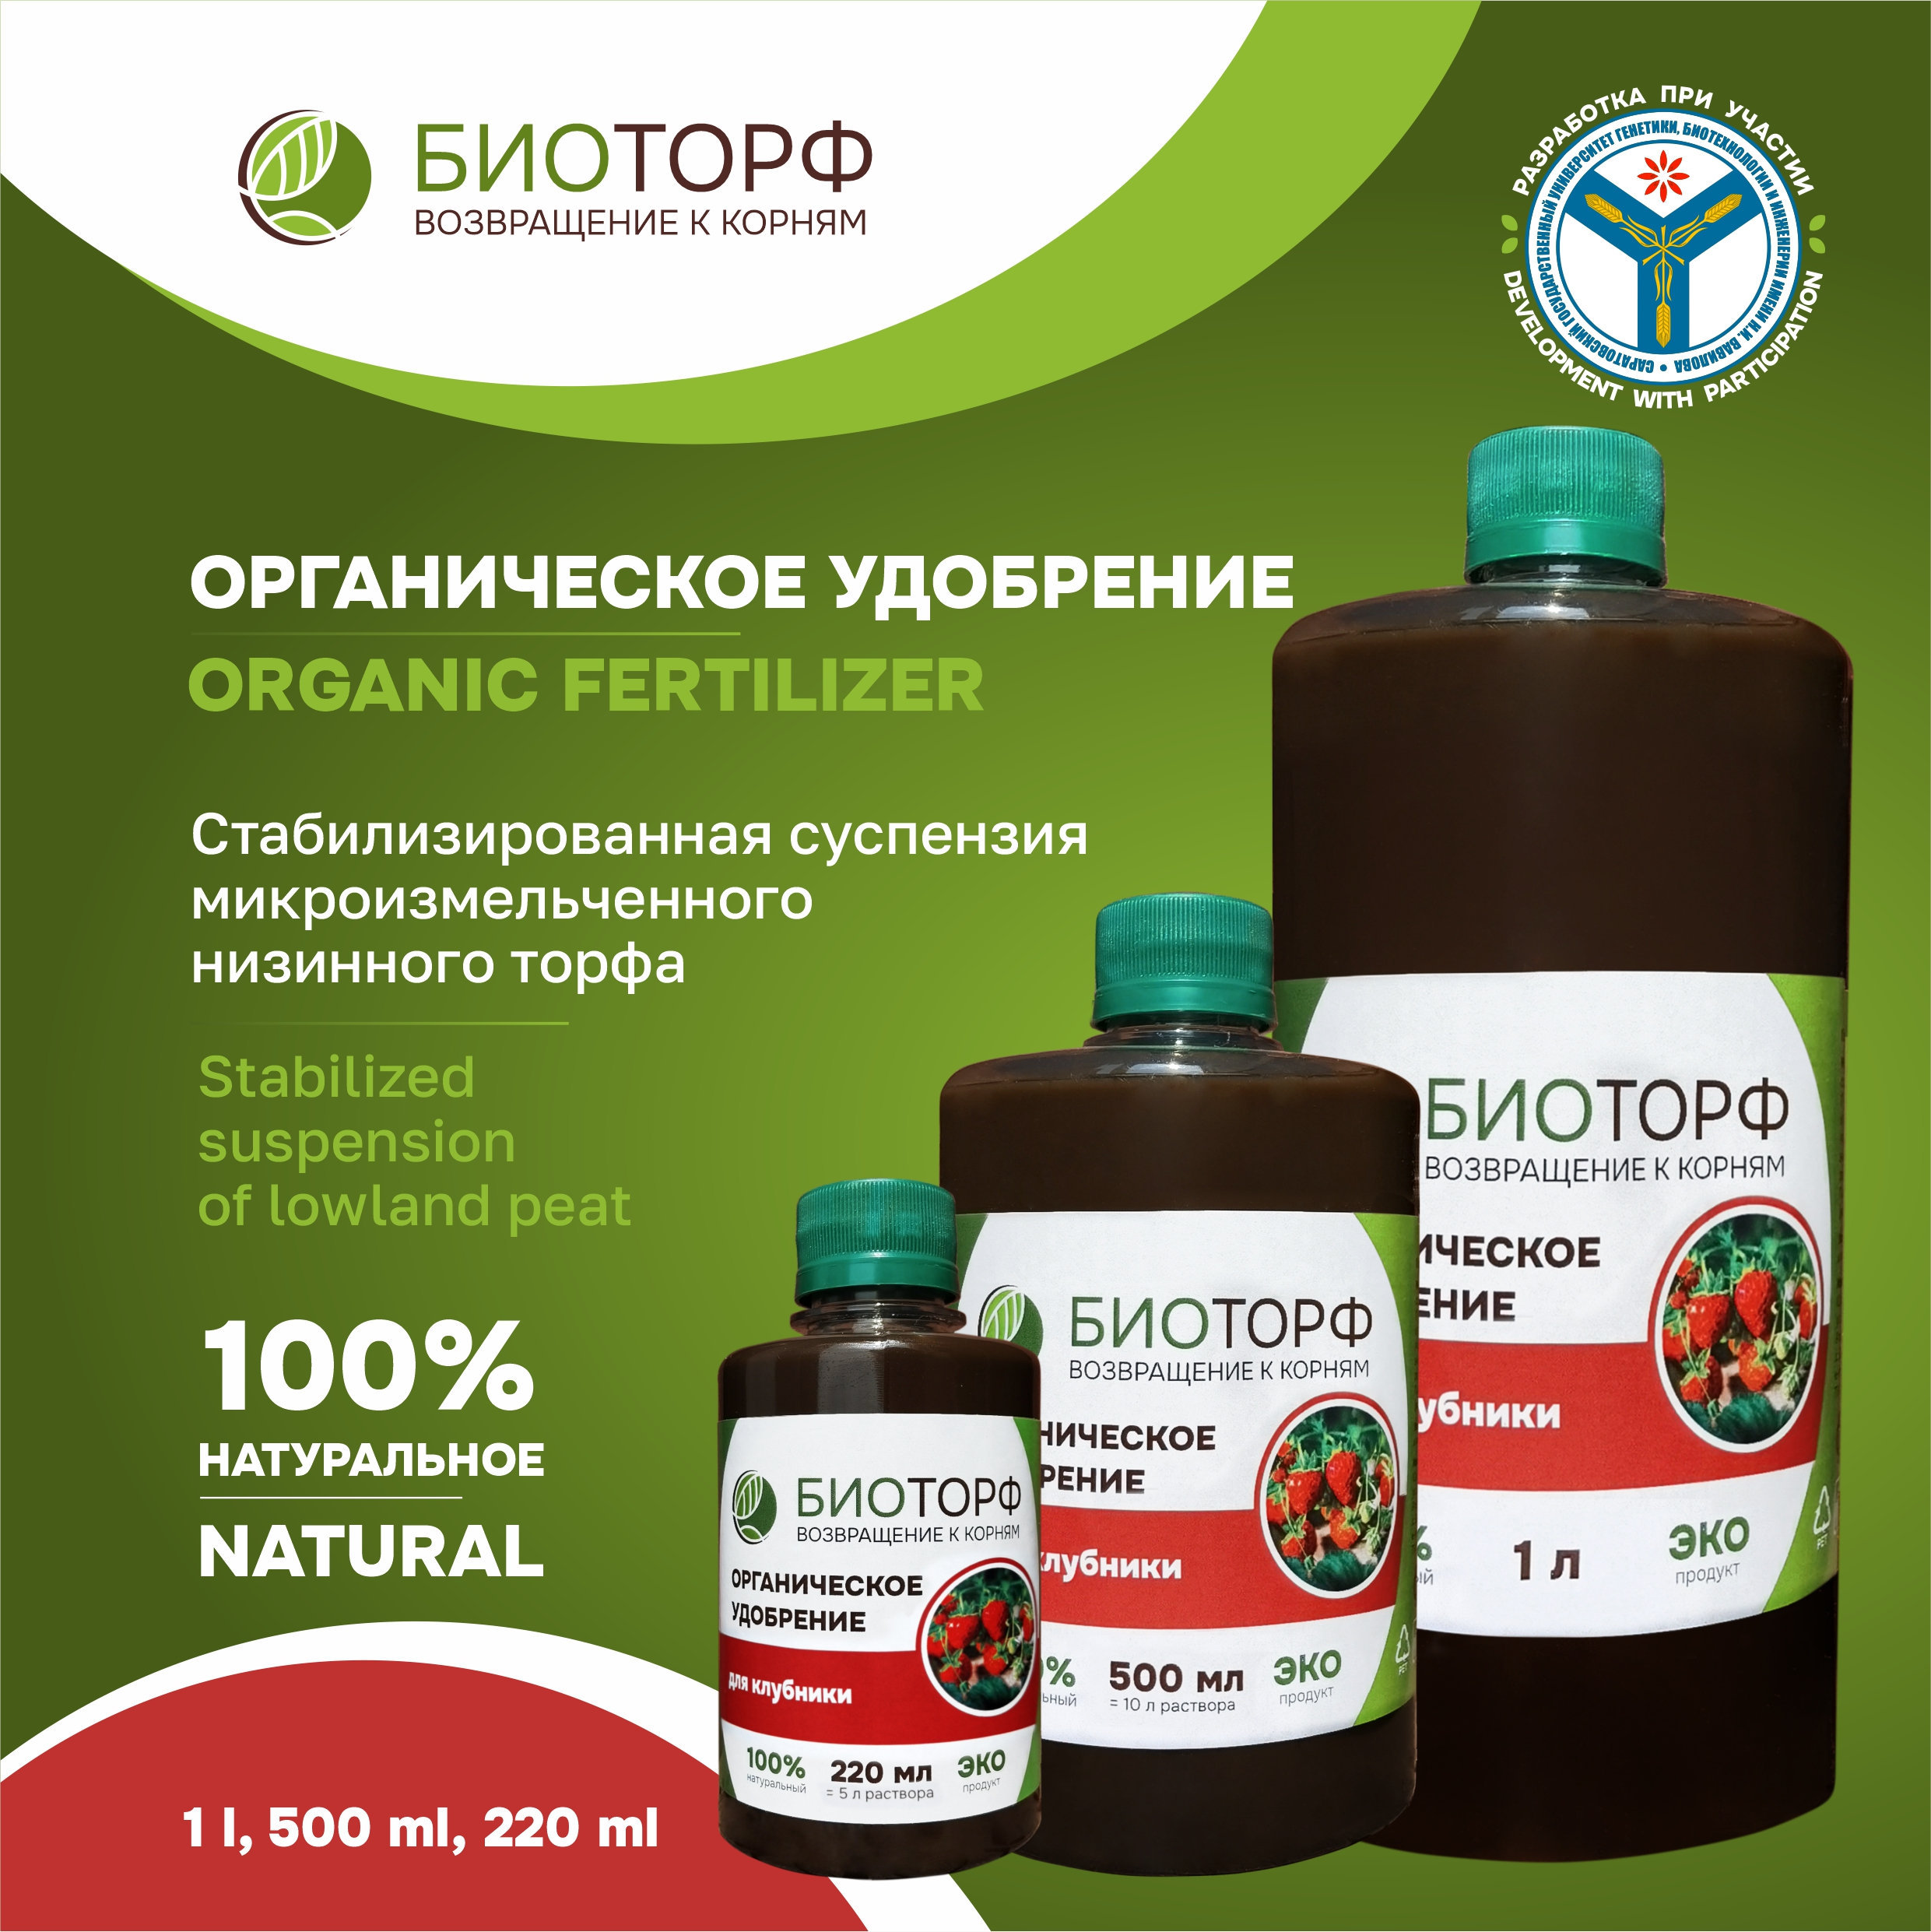 Biotorf, organic liquid fertilizer for strawberries, 220 ml, 500 ml, 1 l